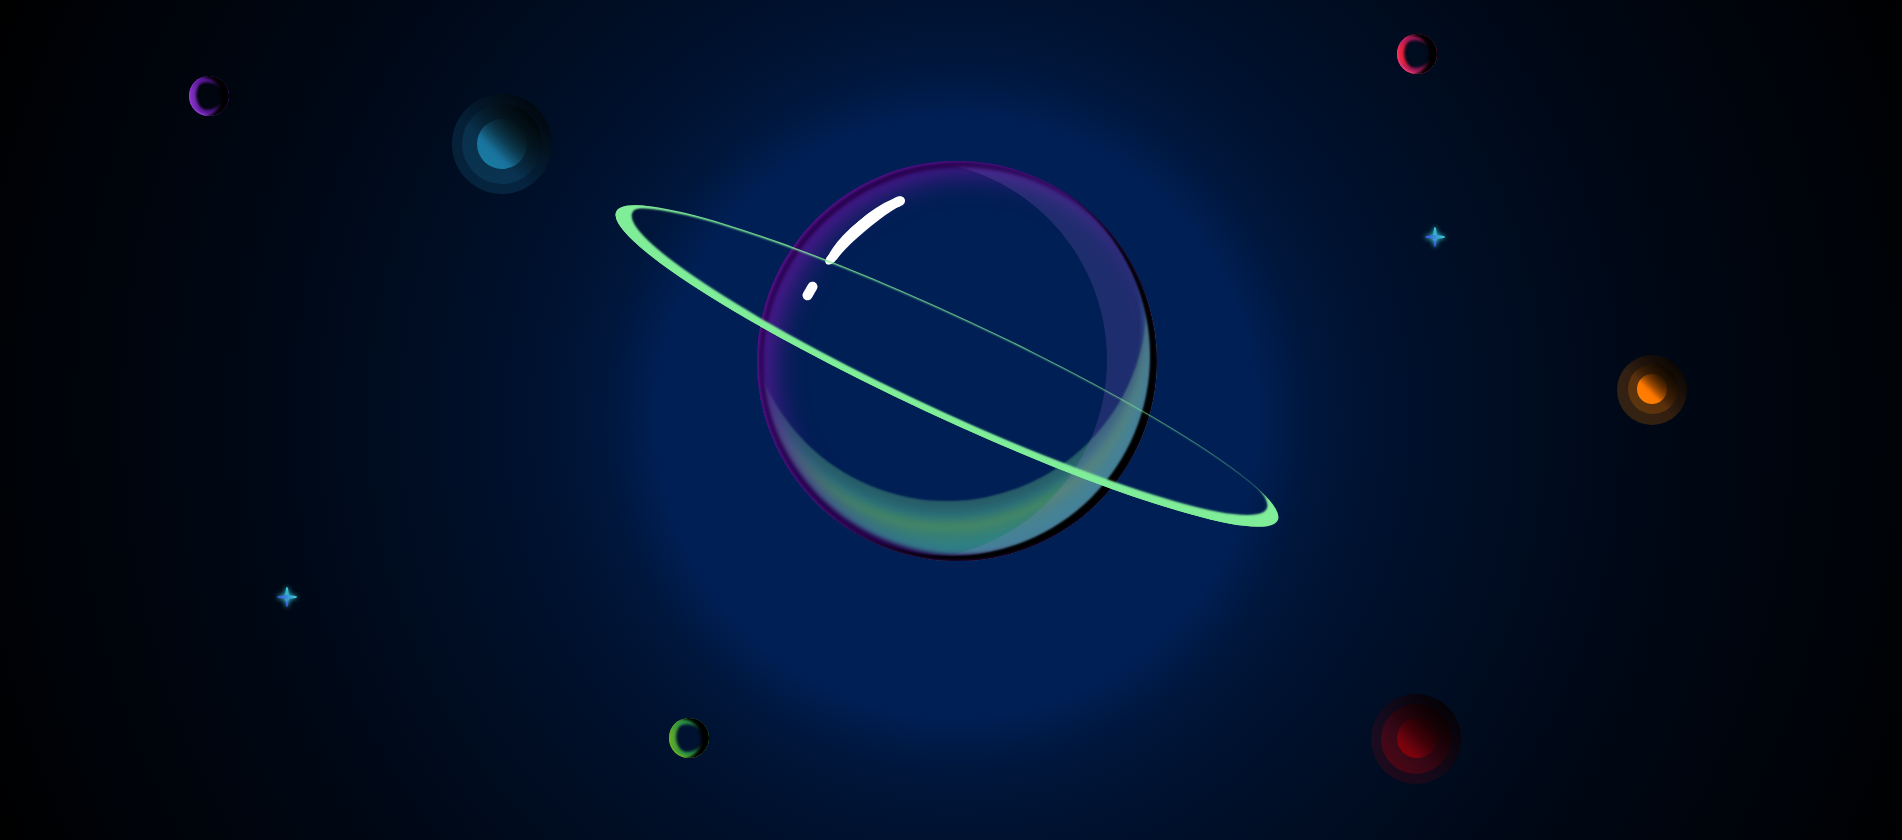 彩色卡通星球行星CSS3图形网页特效素材-萌果小站